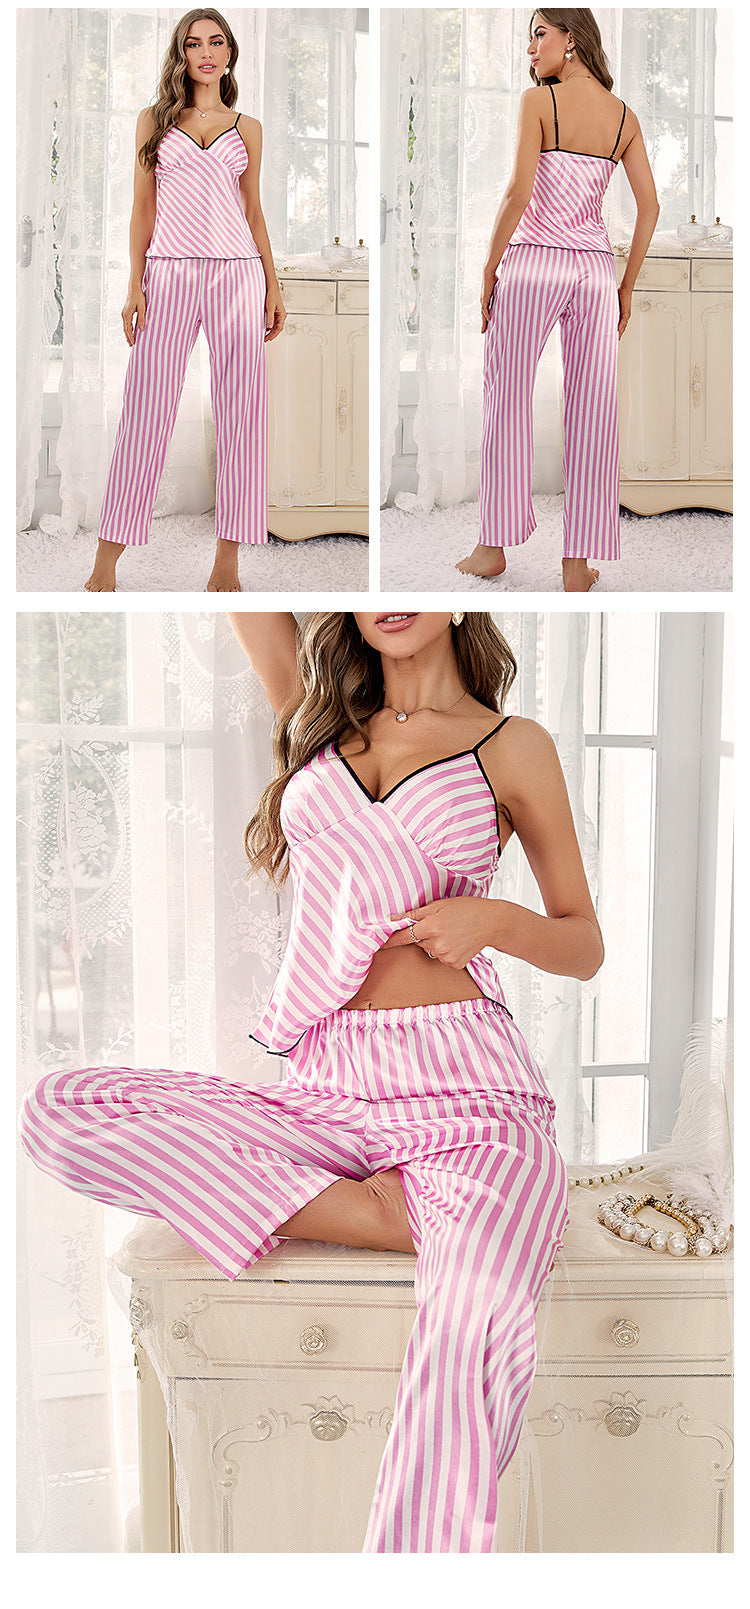 Summer Ice Silk Tank Tops & Pants Sleepwear-Sleepwear & Loungewear-Pink Striped-S-Free Shipping Leatheretro